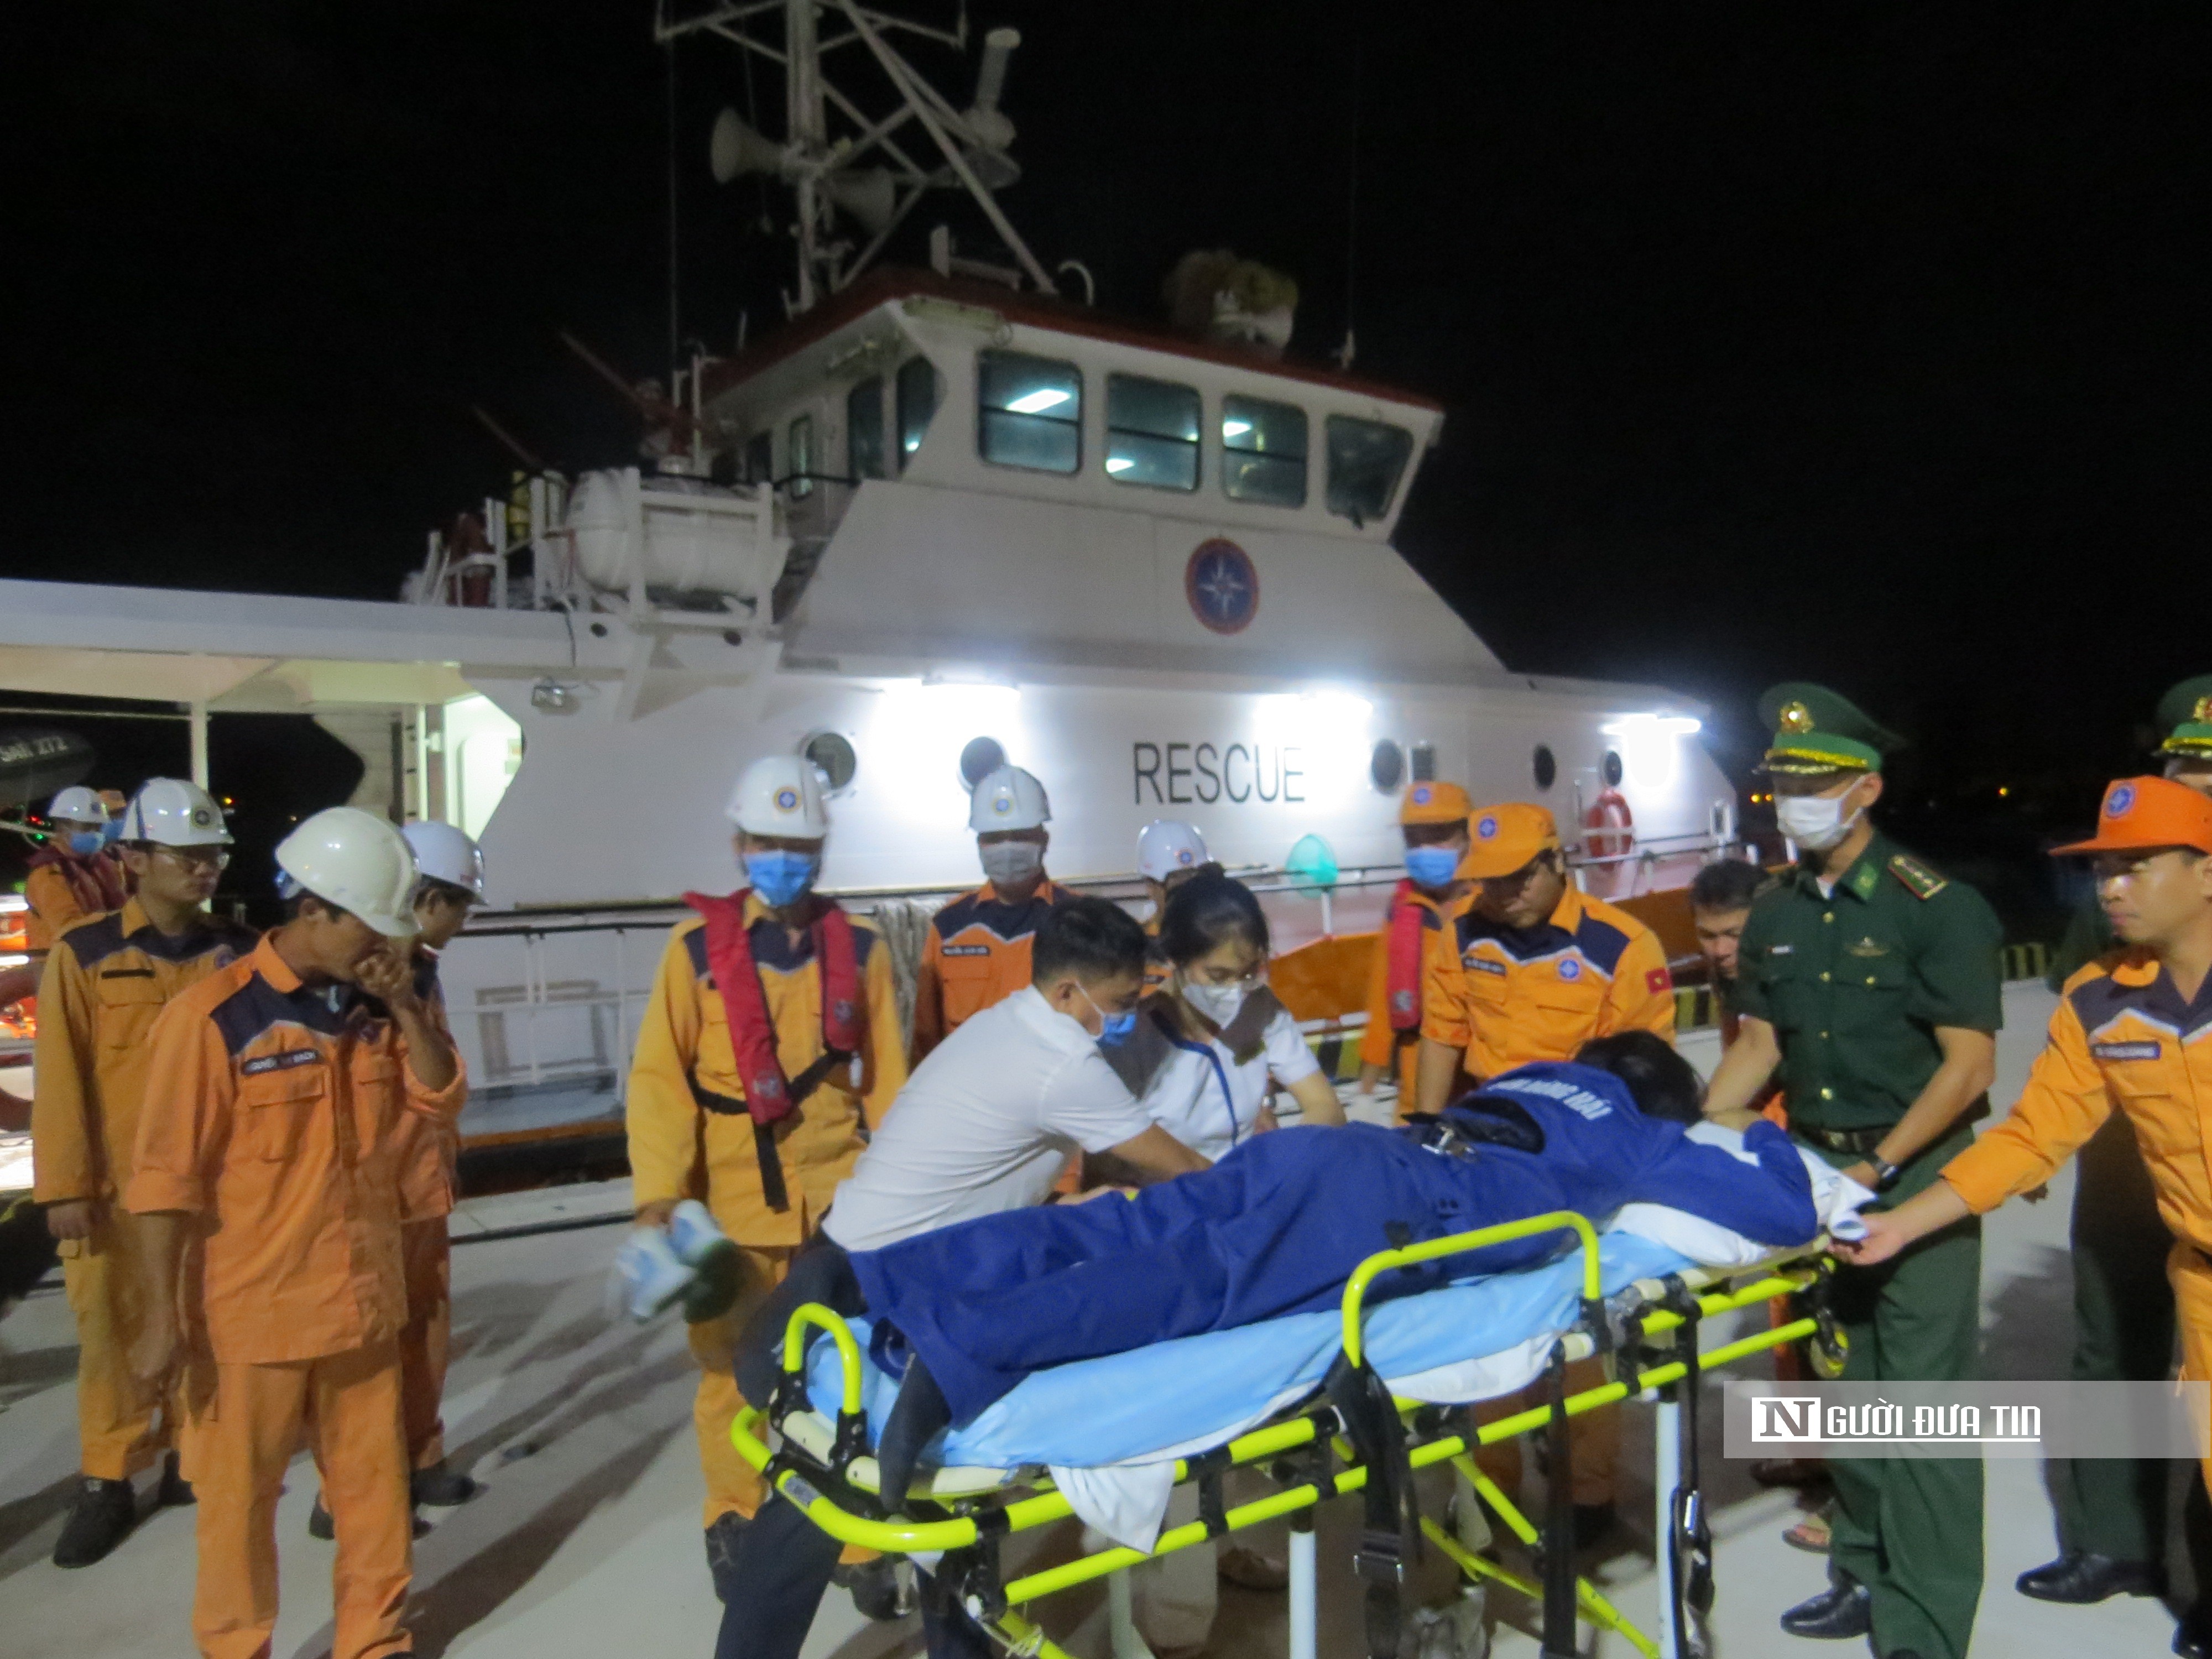 Dân sinh - Cứu nạn thành công 2 thuyền viên người nước ngoài gặp nạn trên biển (Hình 2).